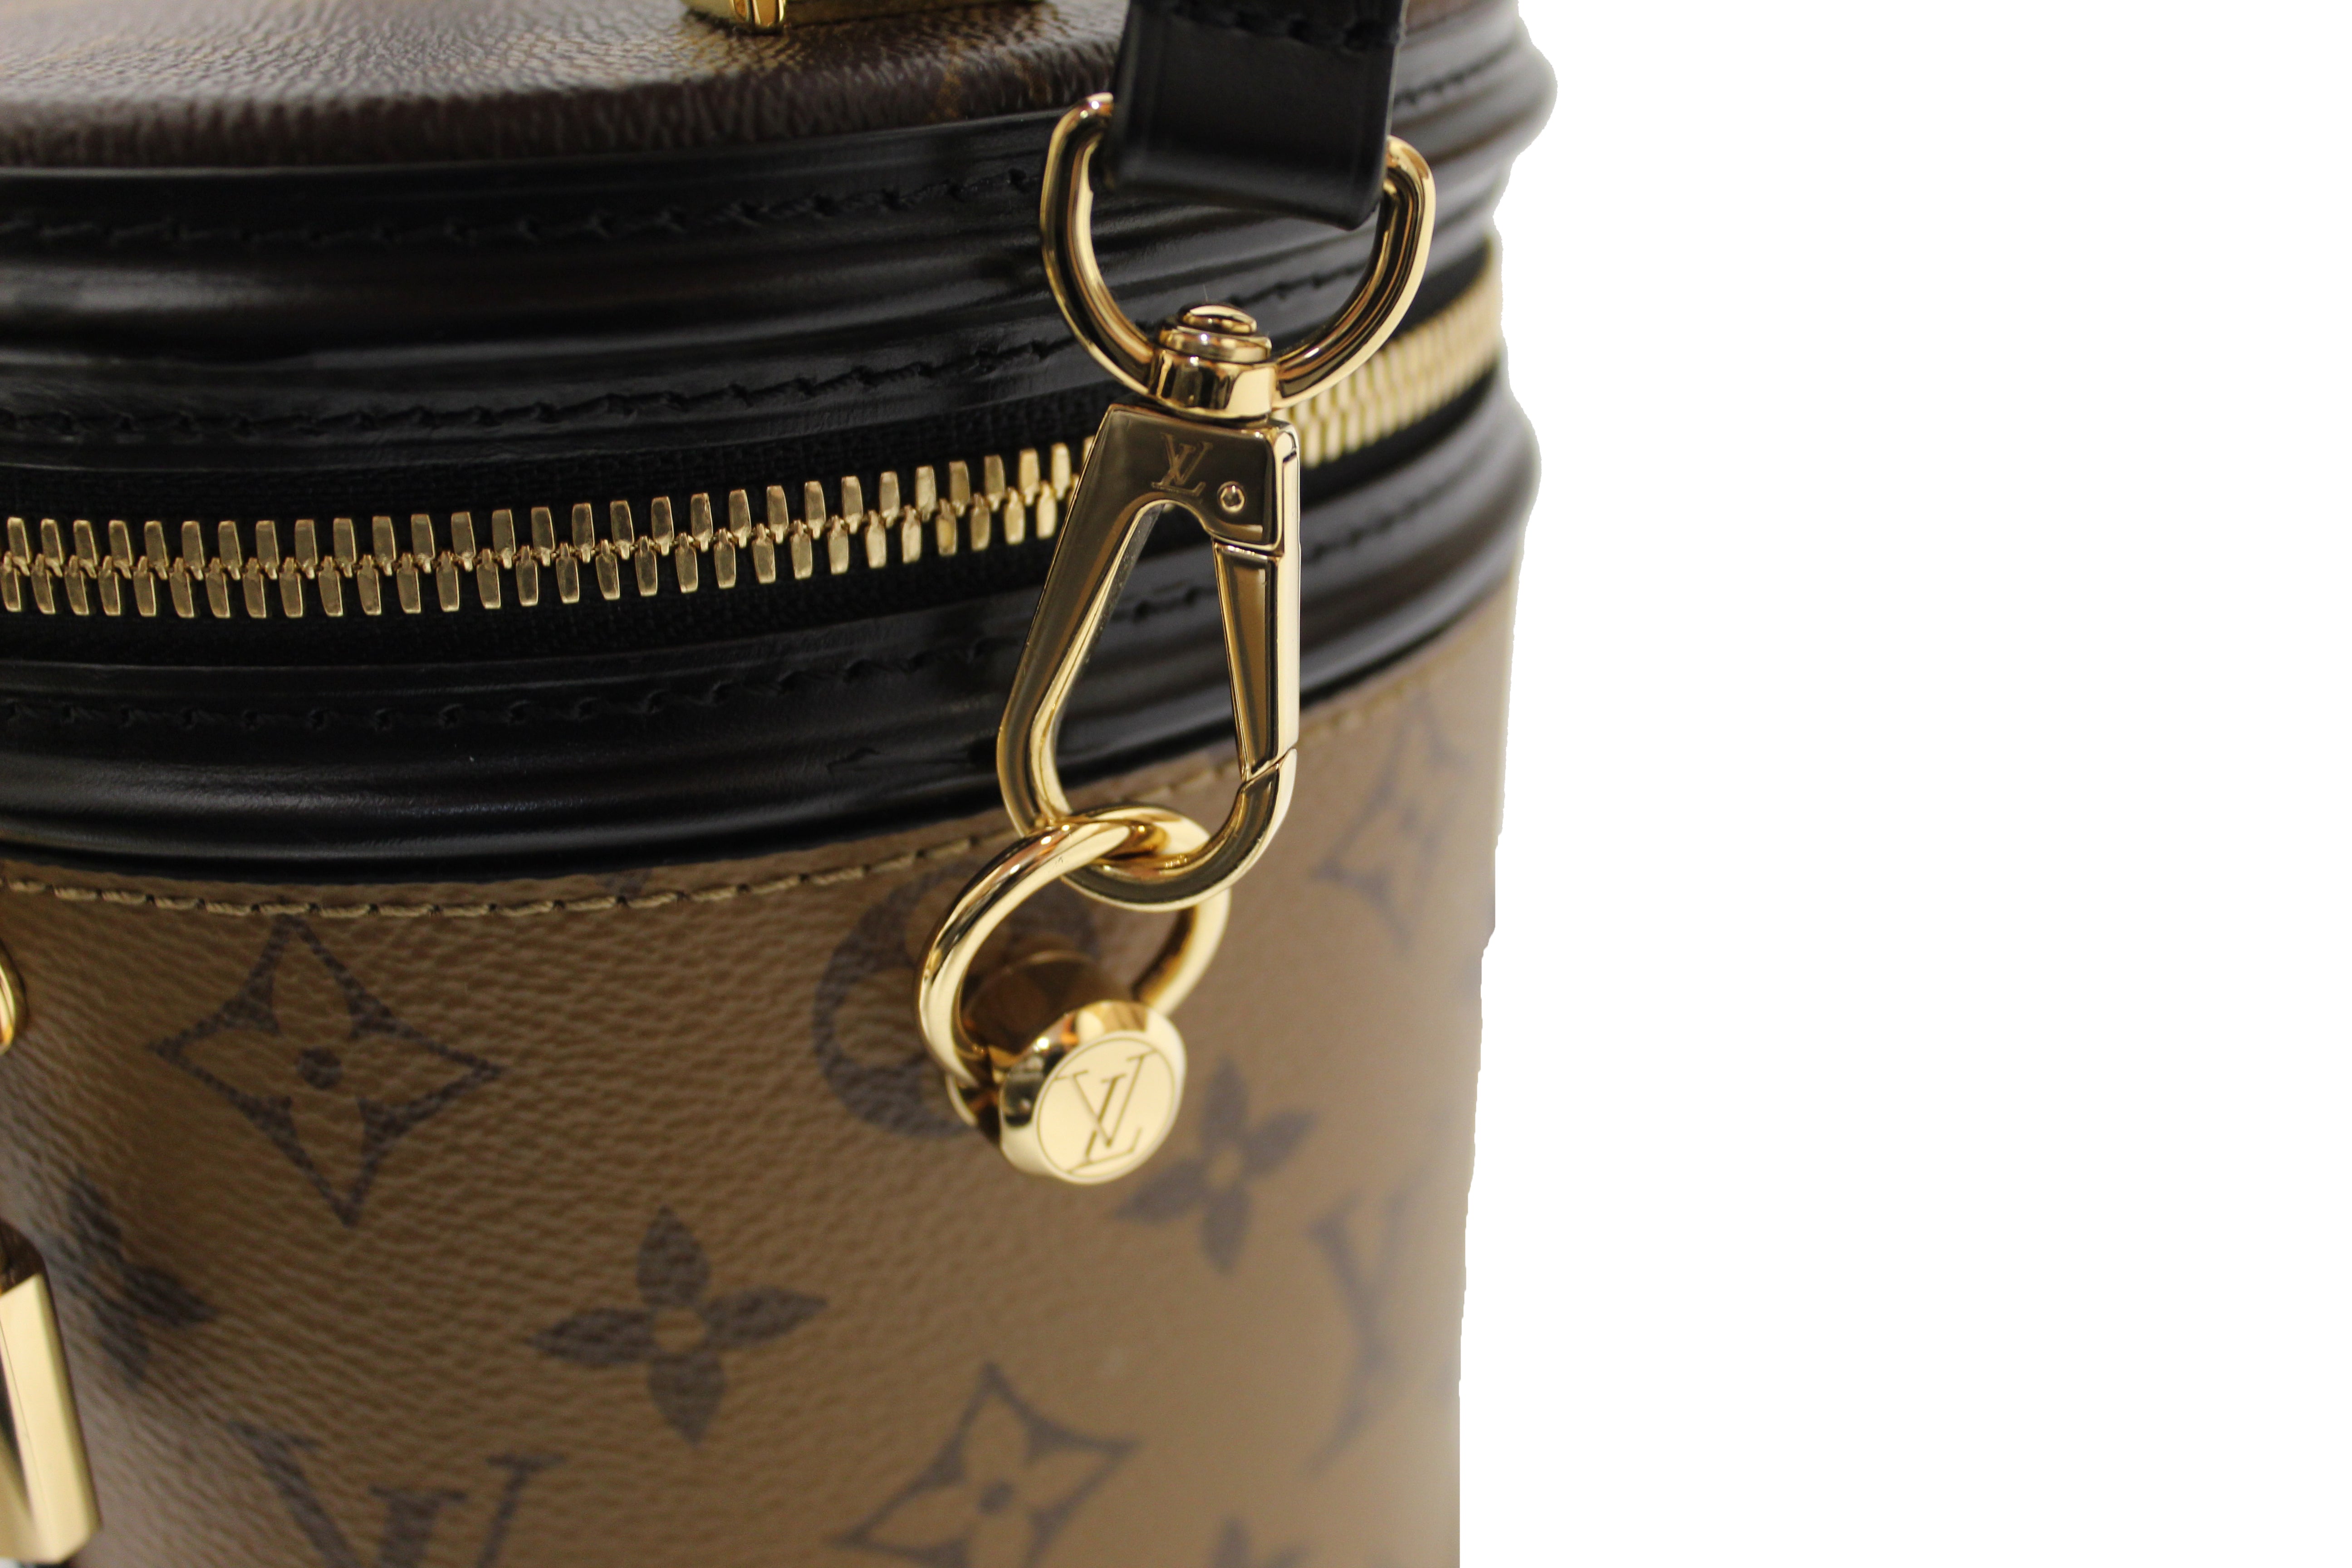 Louis Vuitton Cannes Vanity Bag(Brown)